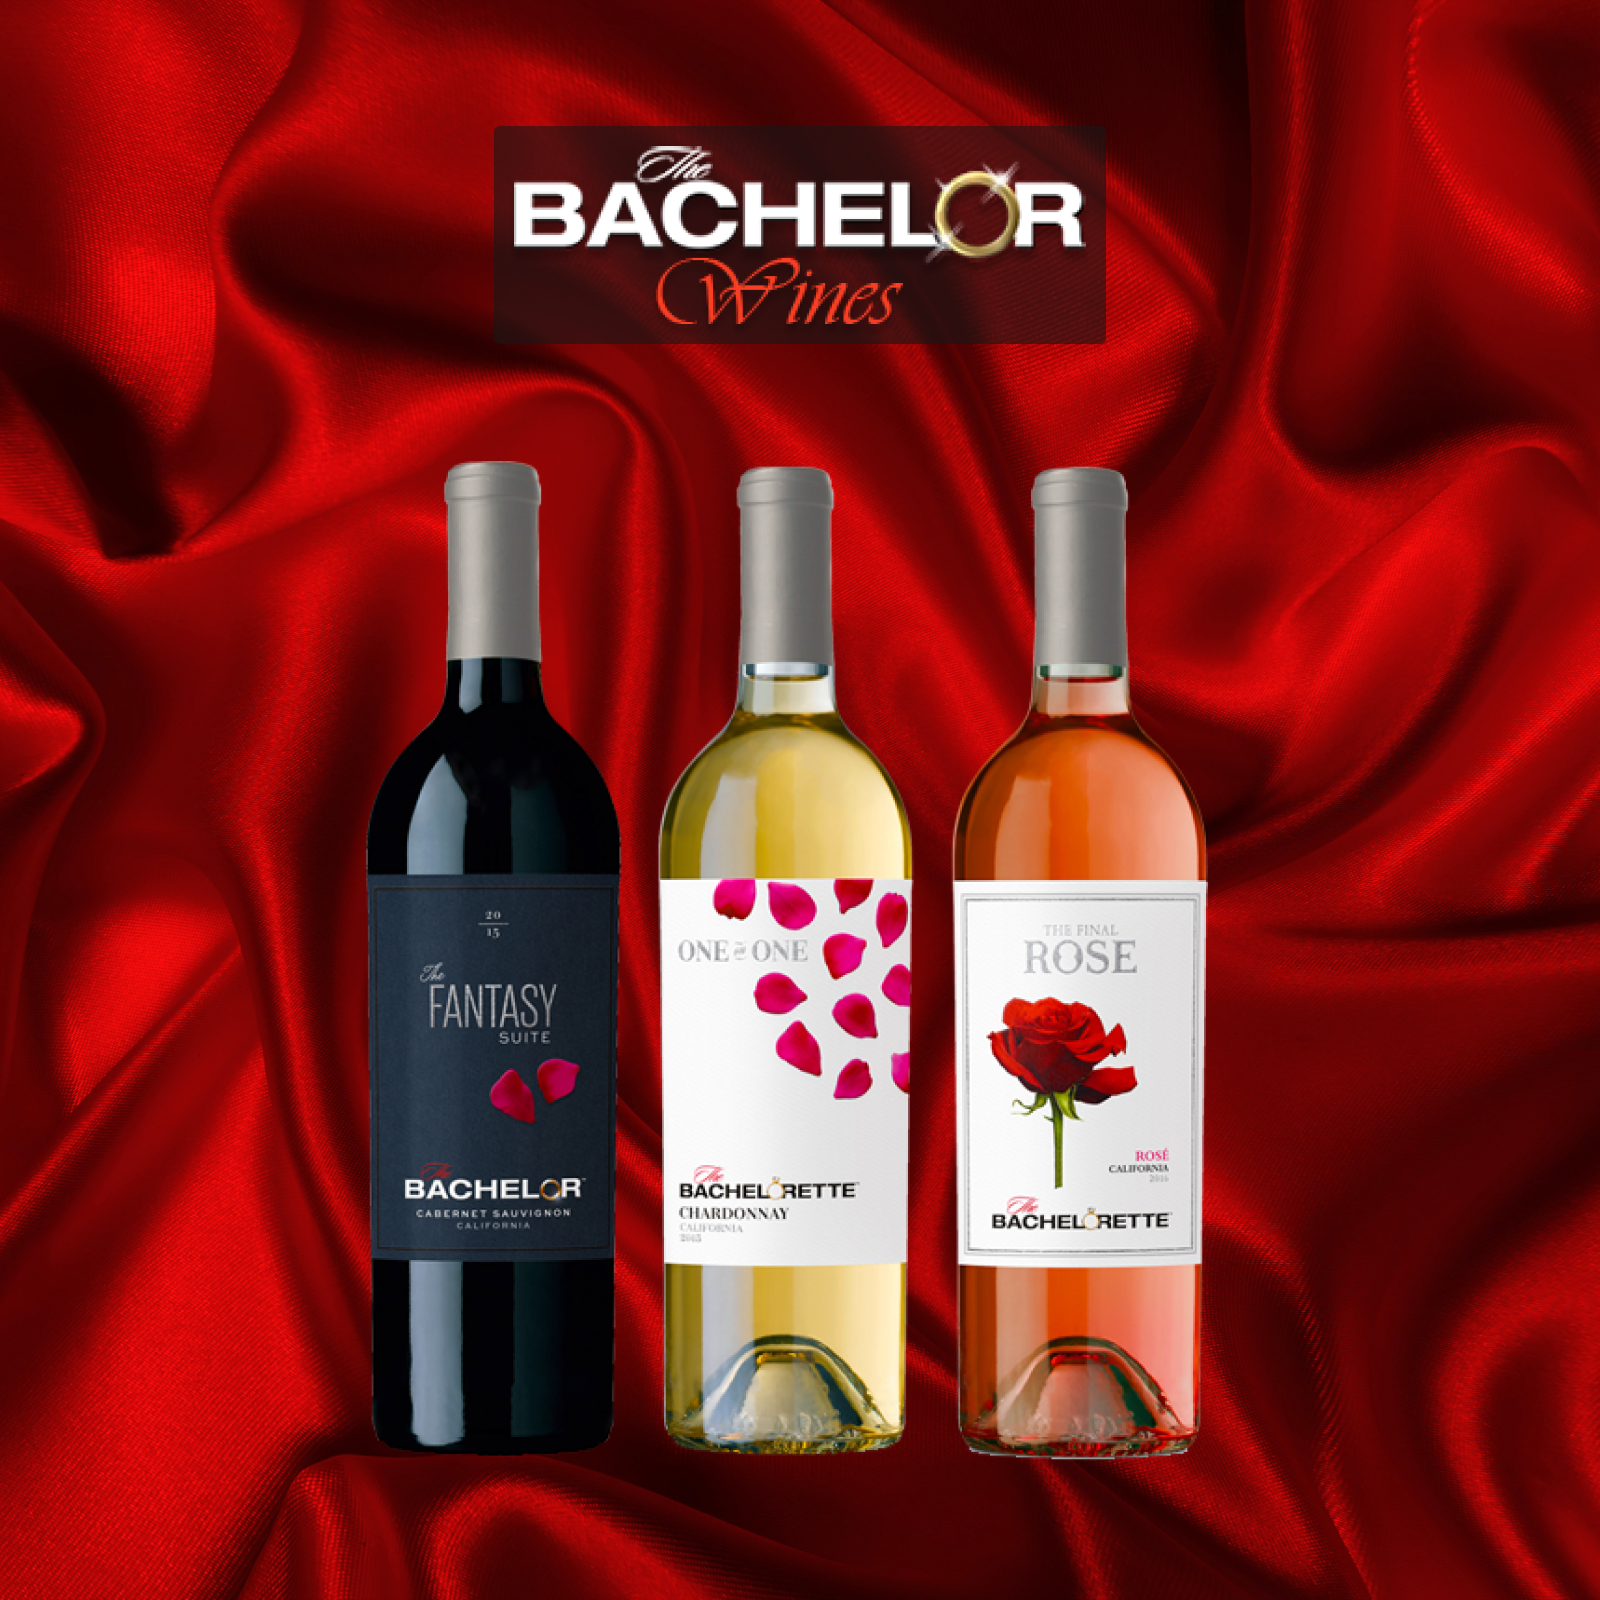 3 The Bachelor branded wine bottles 